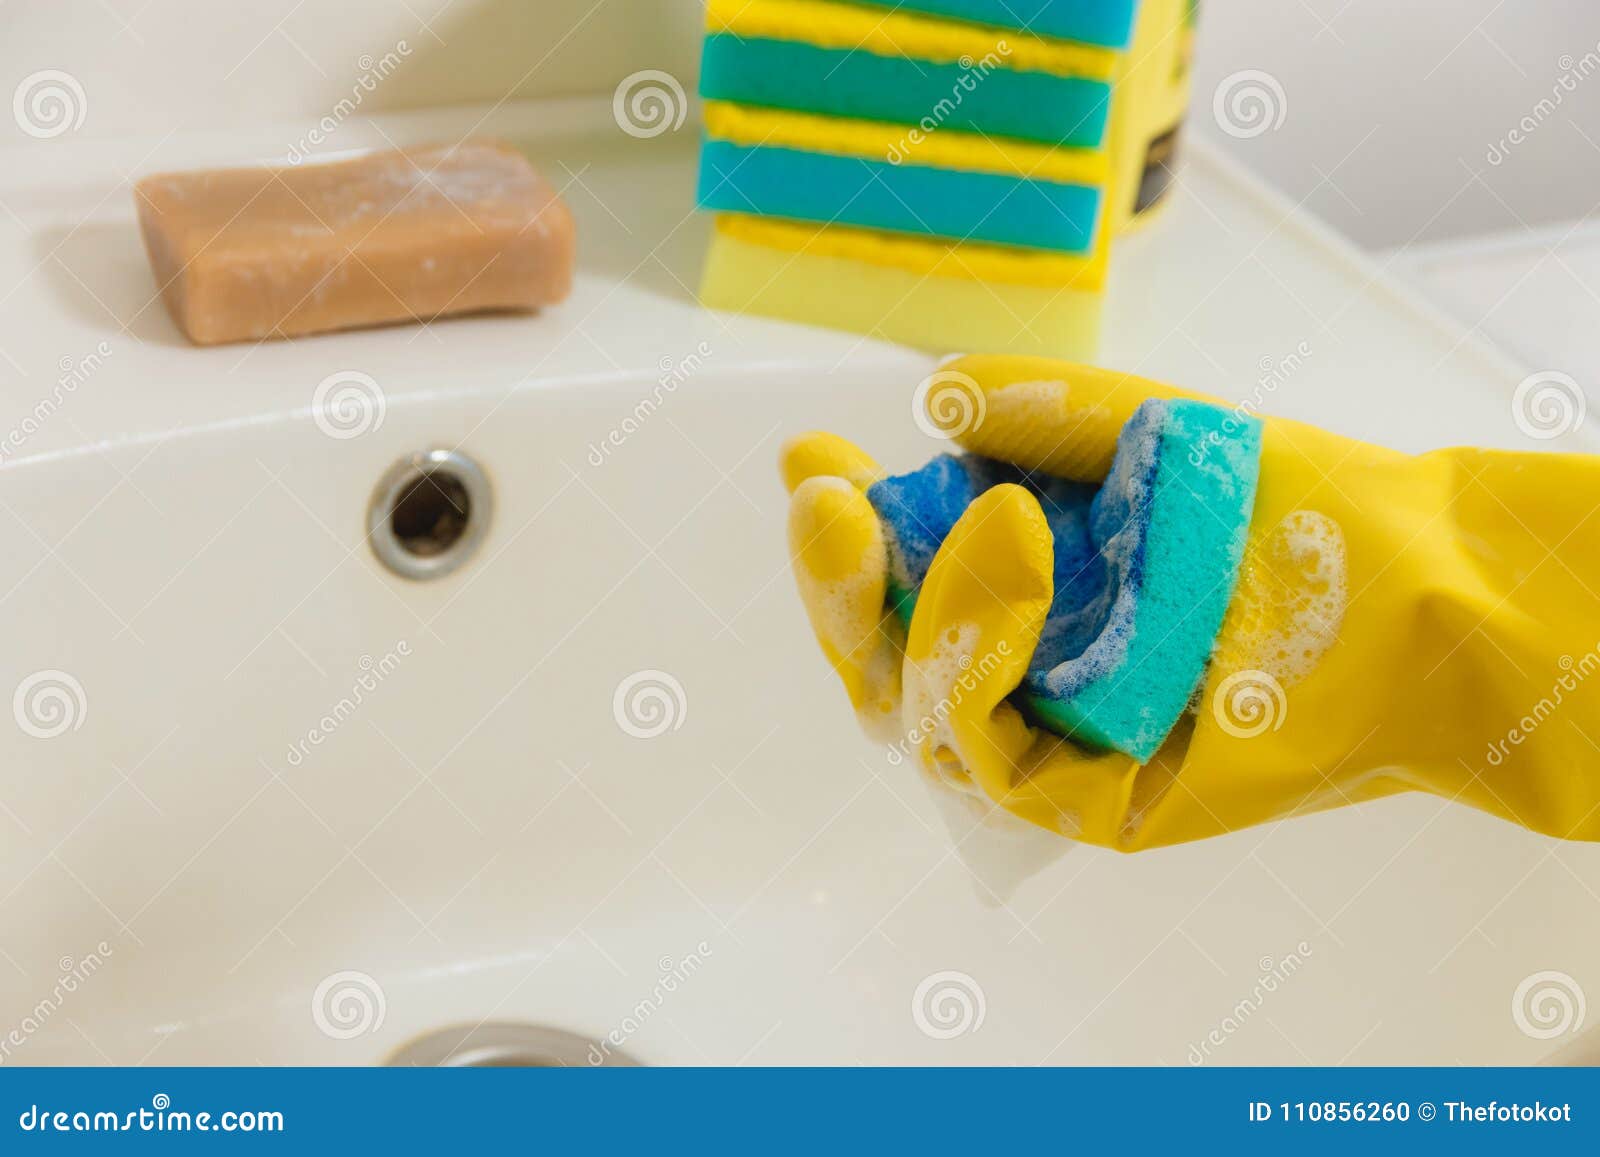 Как очистить желтую ванну. Чистетел вану резинавий. Пятновыводитель китайский голубой с губкой. Пожелтела резиновая часть лейки в ванной. Покрытие стали порошком в ванной.